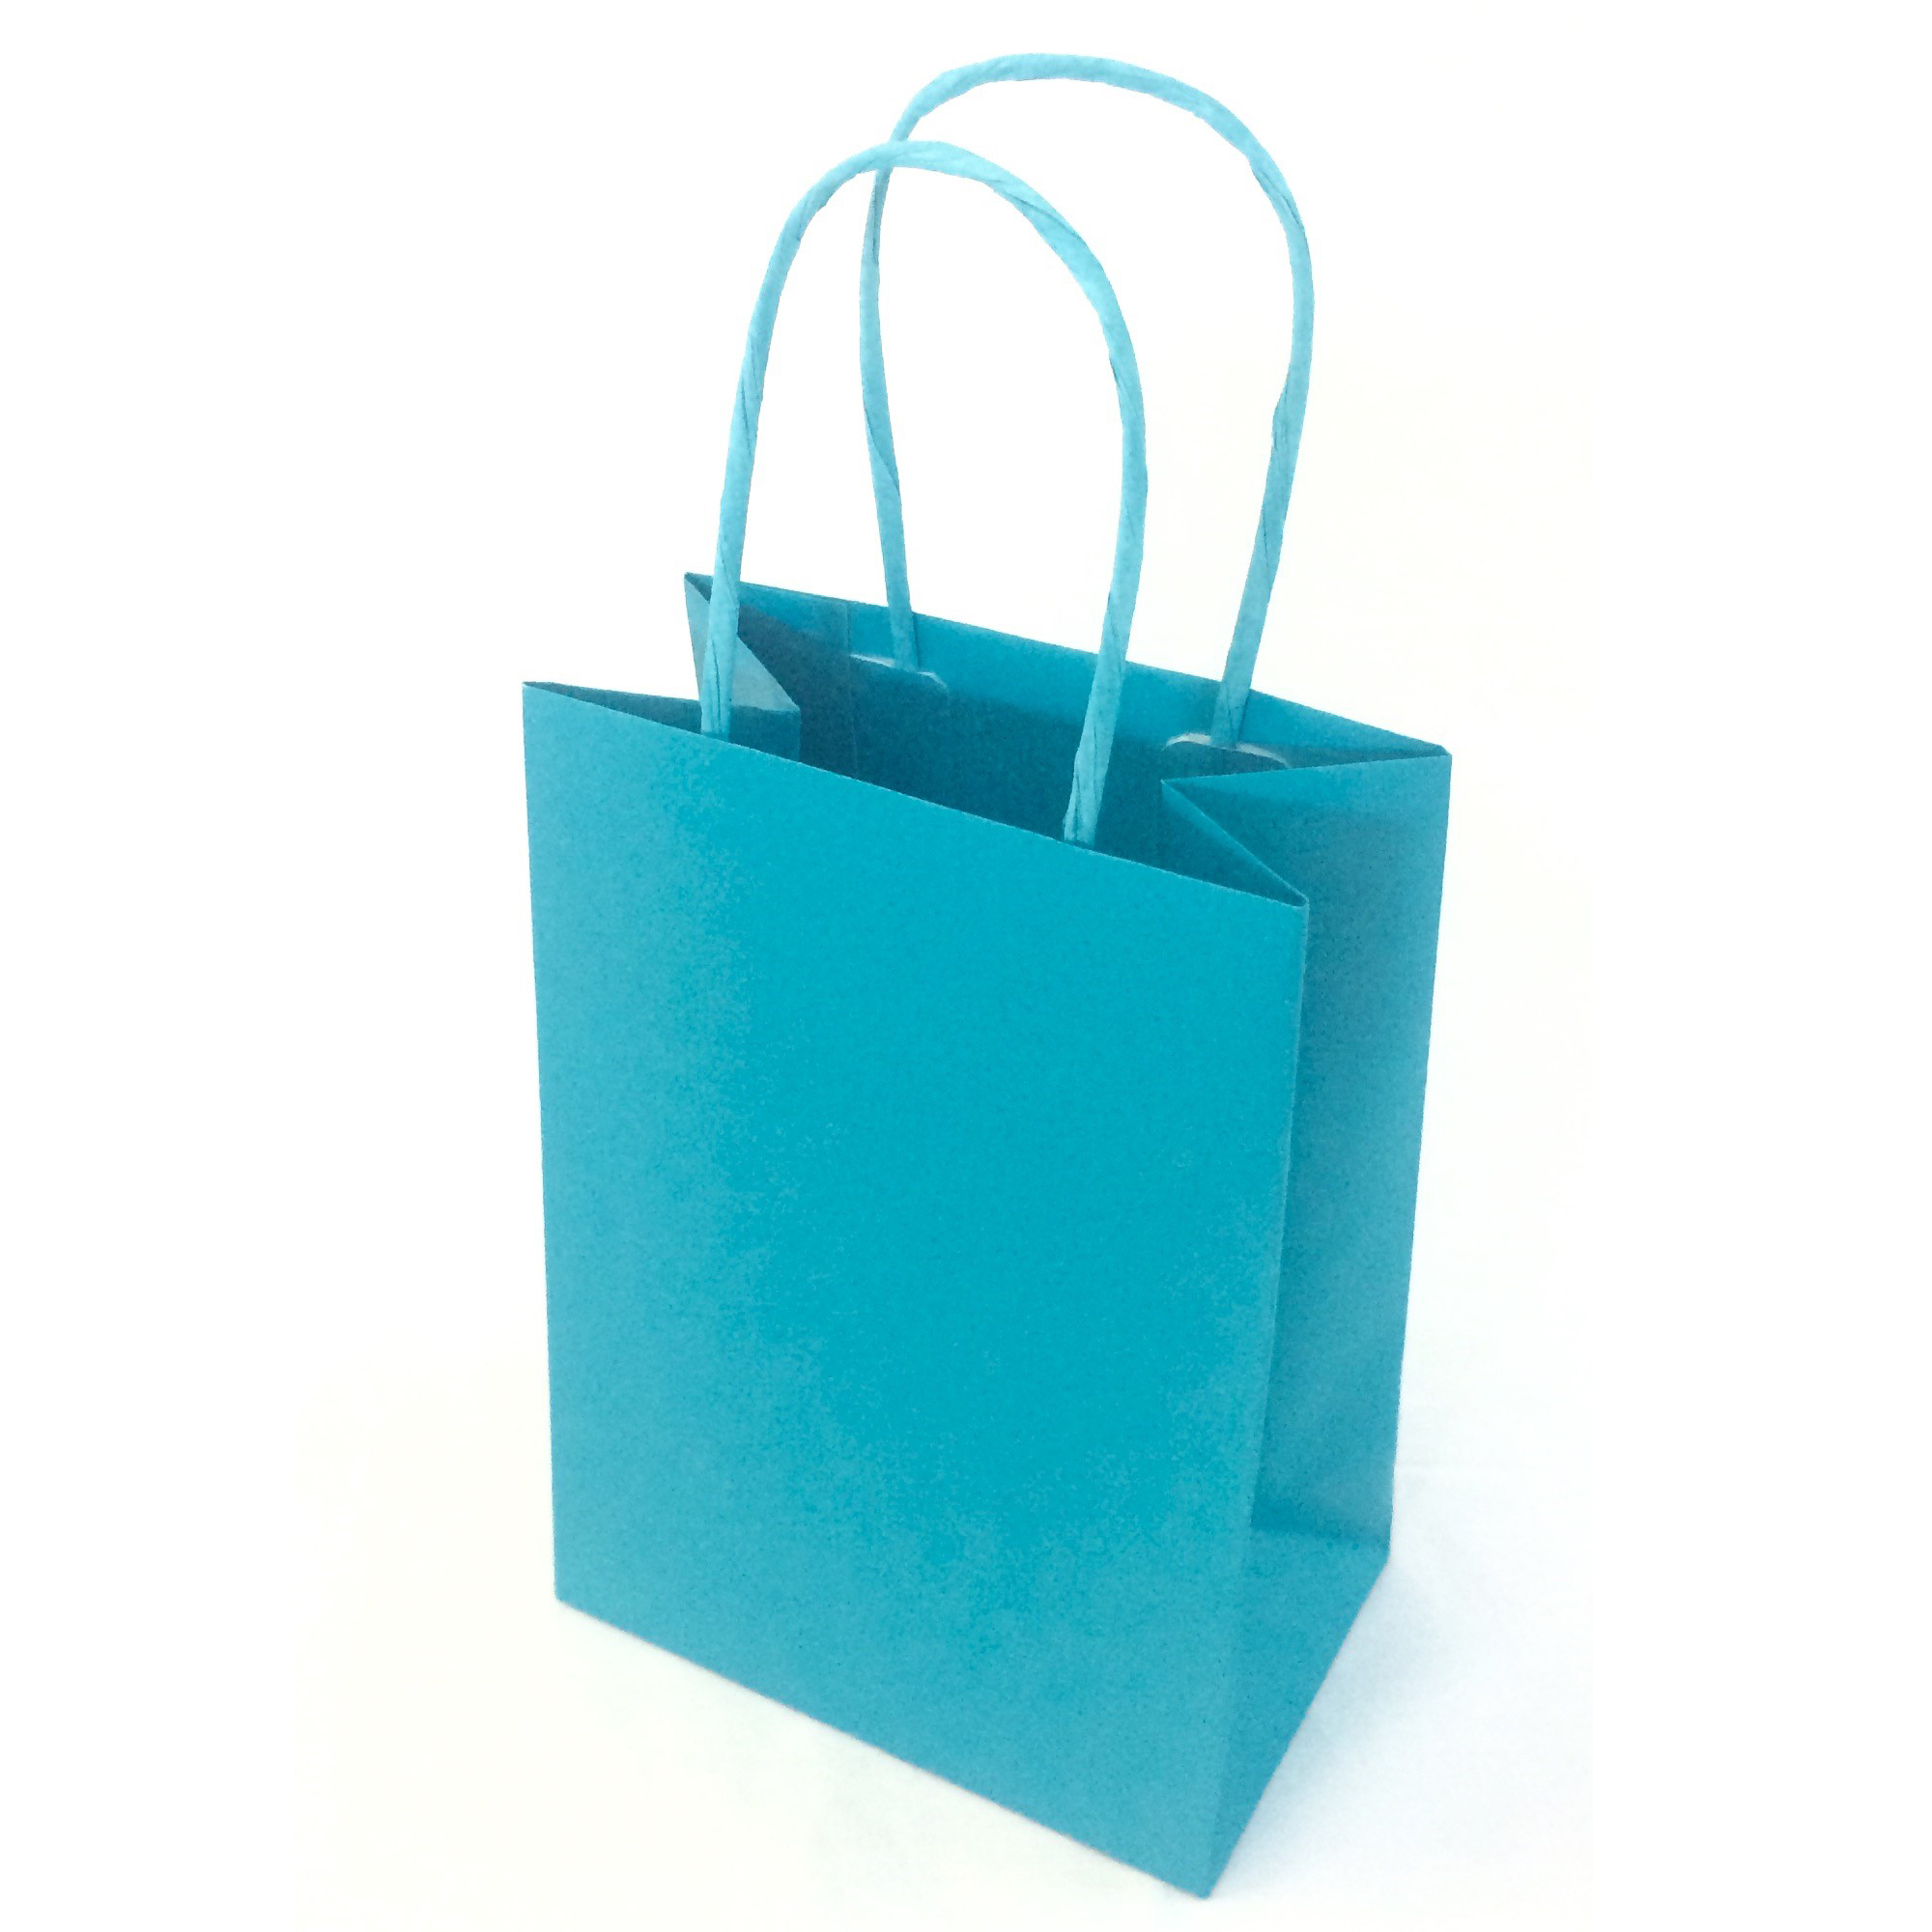 Shopper Twisted - maniglie cordino - 45 x 15 x 50 cm - carta kraft -  turchese - Mainetti Bags - conf. 25 pezzi su